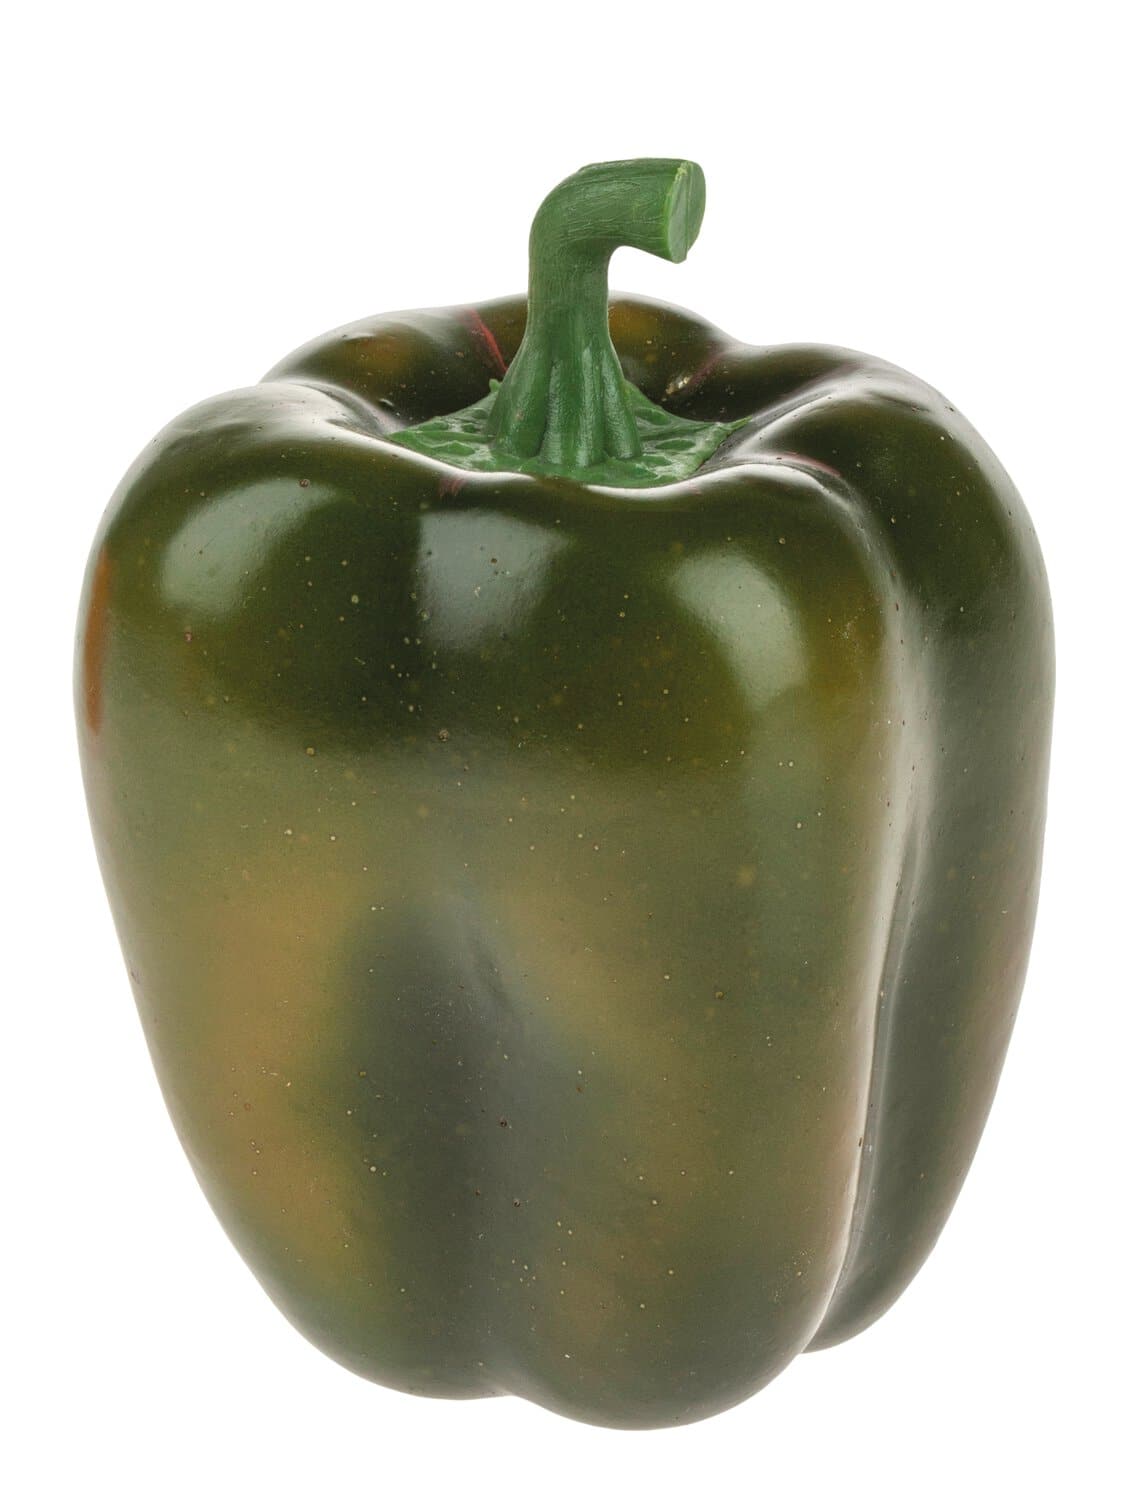 Unechte Paprika aus Kunststoff, 9 cm, grün